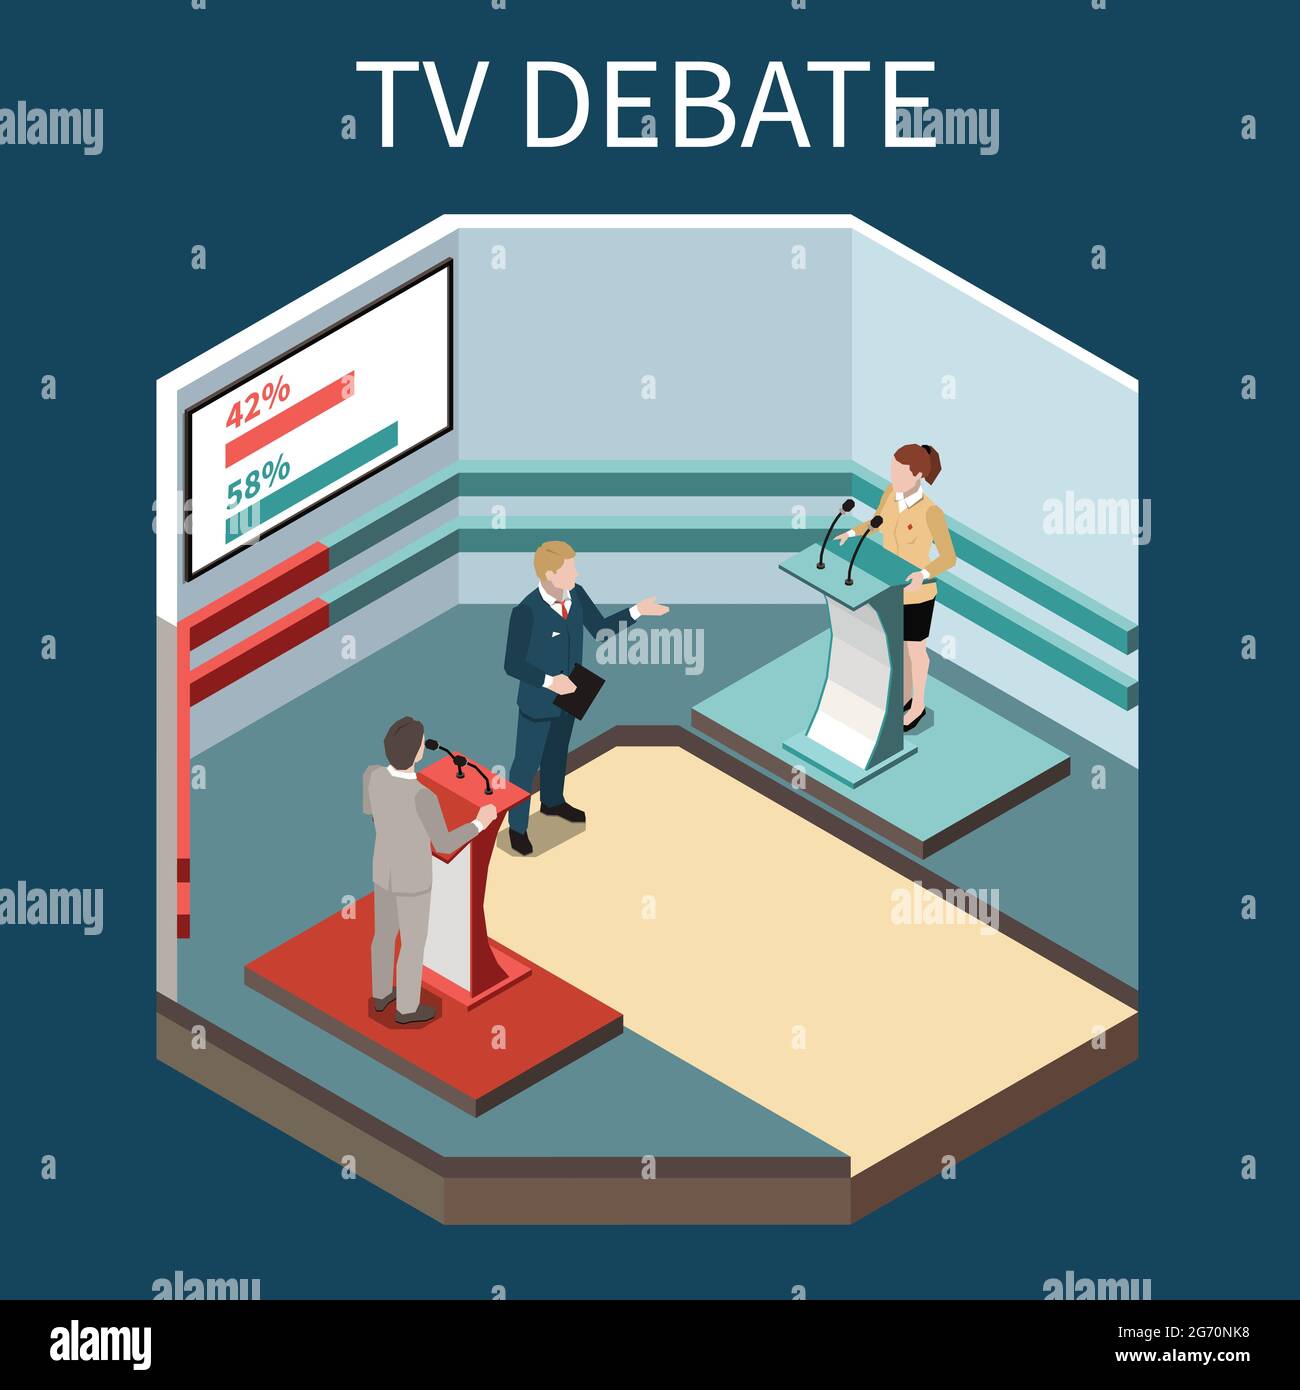 TV-Debatte isometrischer Hintergrund mit tv-Moderator zwei politische Konkurrenten an Tribünen und Bildschirm mit Rating-Vektor Illustration Stock Vektor